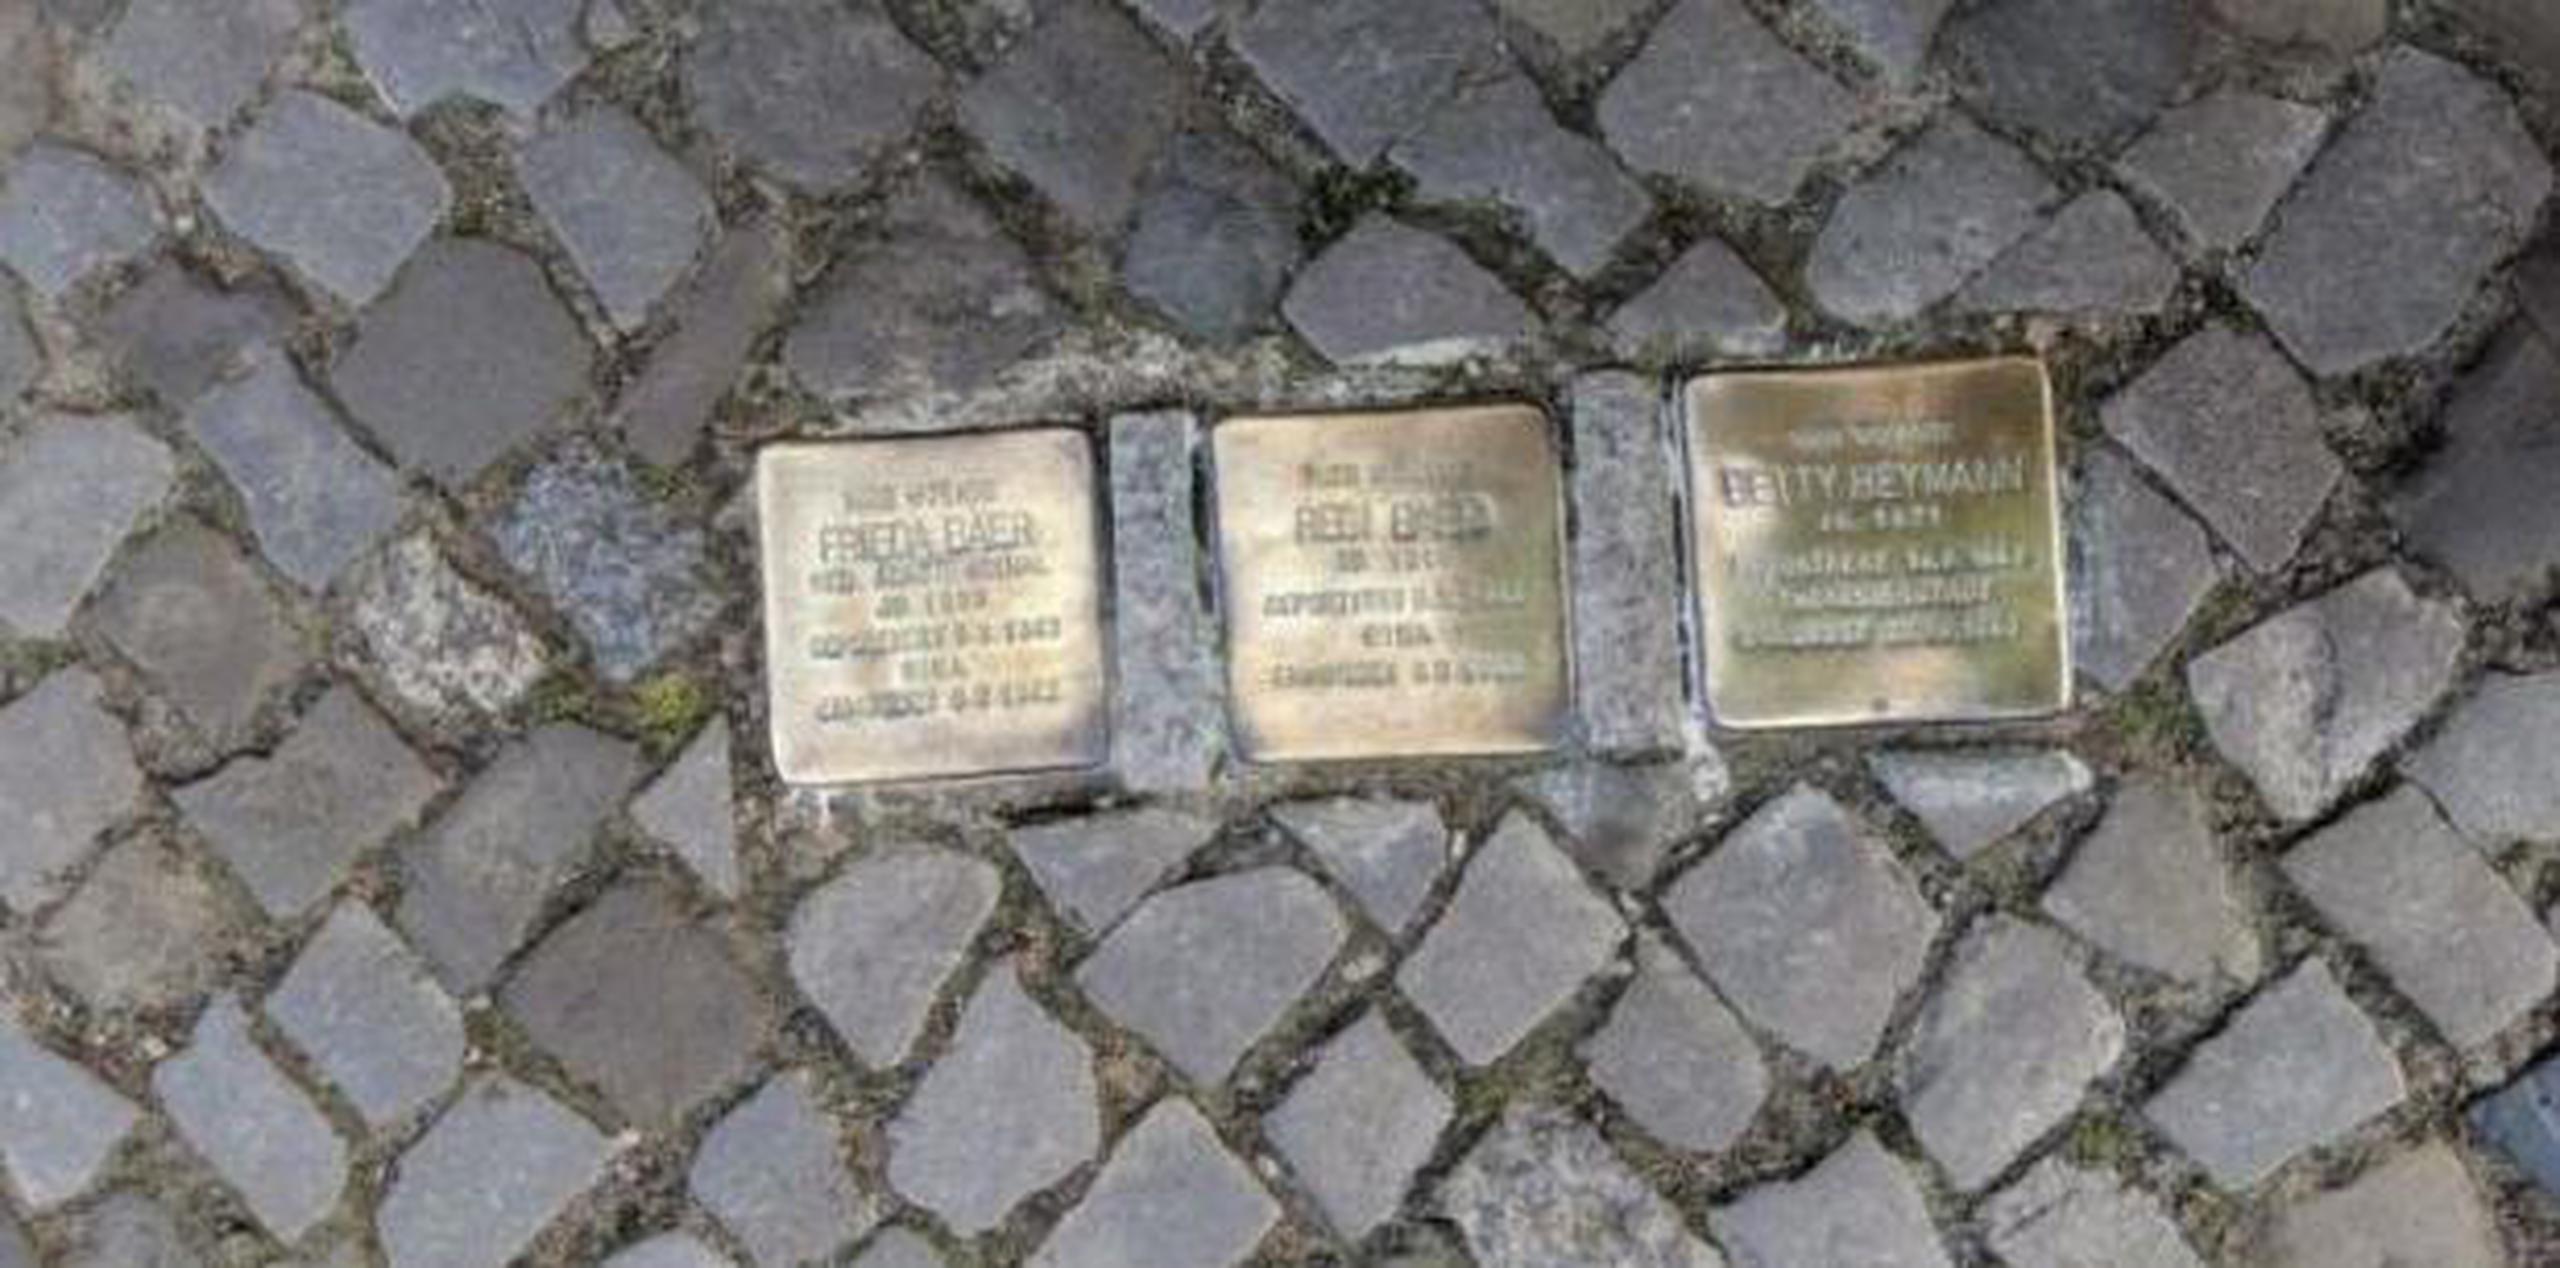 En Berlín hay 7,876 adoquines y en Alemania más de 30,000 mini-memoriales en medio del pavimento con los que uno tropieza y ante los que no se puede ser indiferente.  (maria.arce@gfrmedia.com)